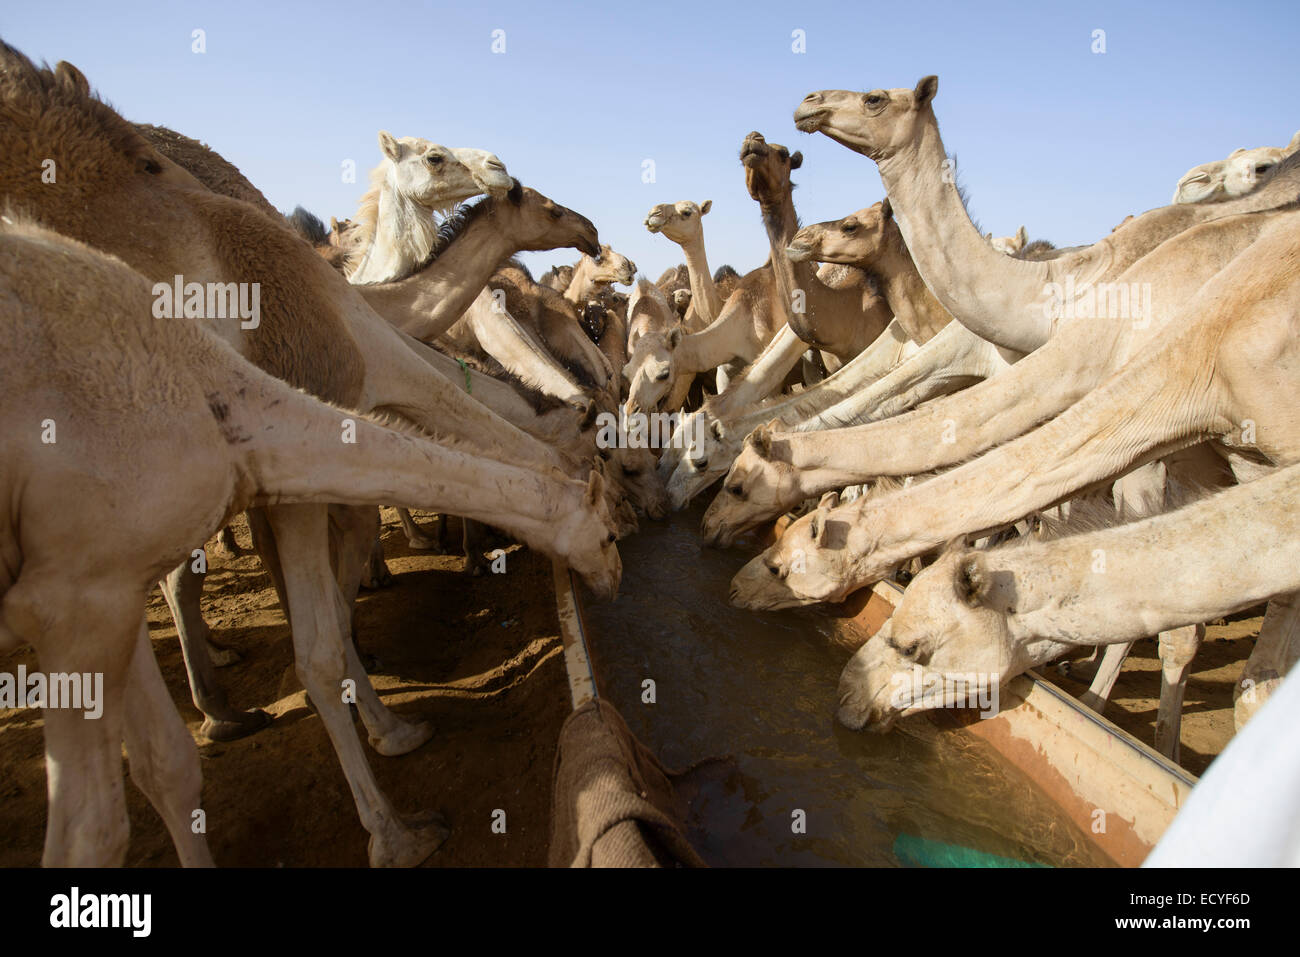 Camel herd of the Sahara desert, Sudan Stock Photo